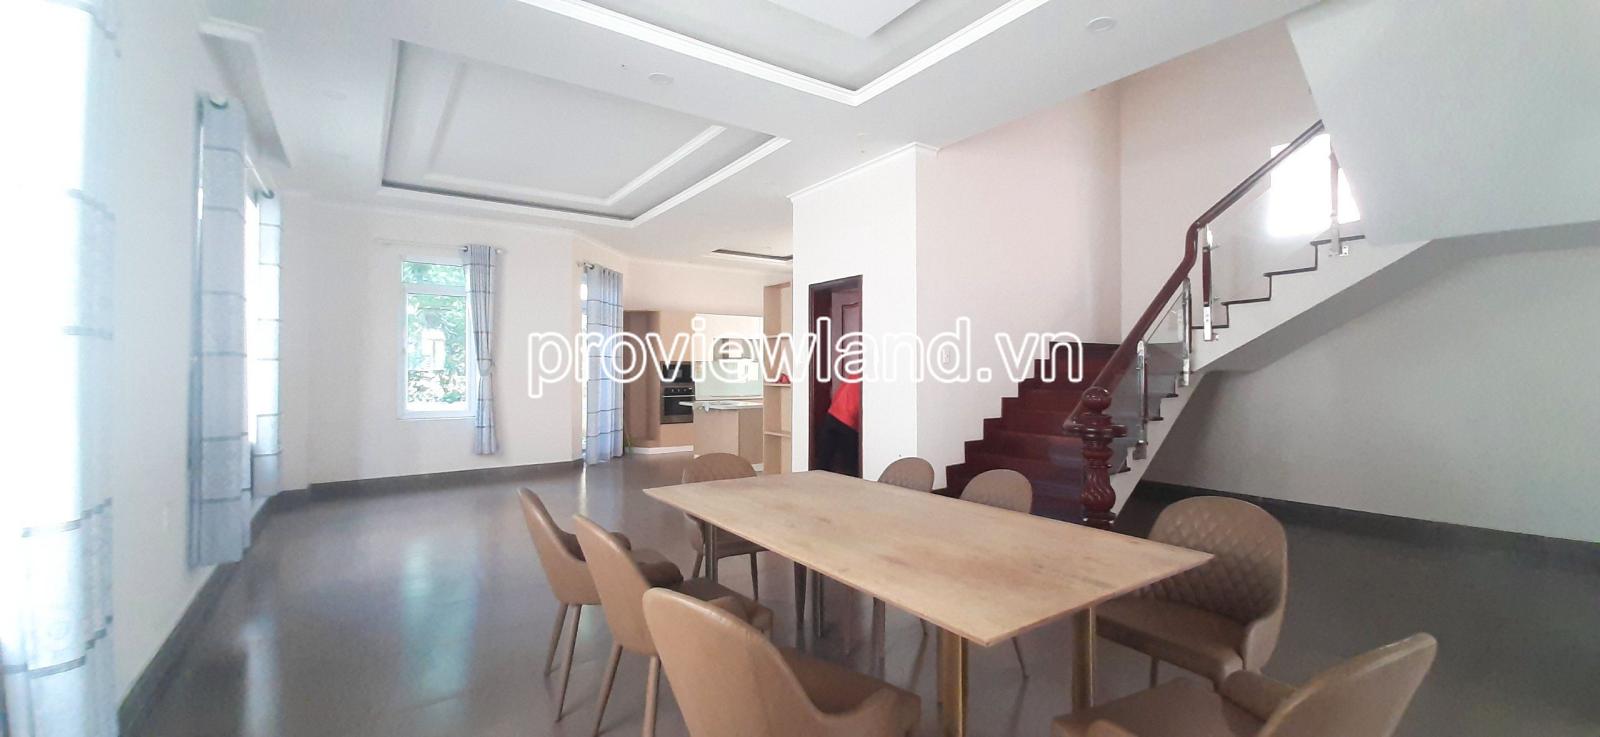 Cho thuê villa khu compound Phường Phú Hữu, Q9 cũ, 125m2 đất, 3 tầng + áp mái, 4PN + 5WC